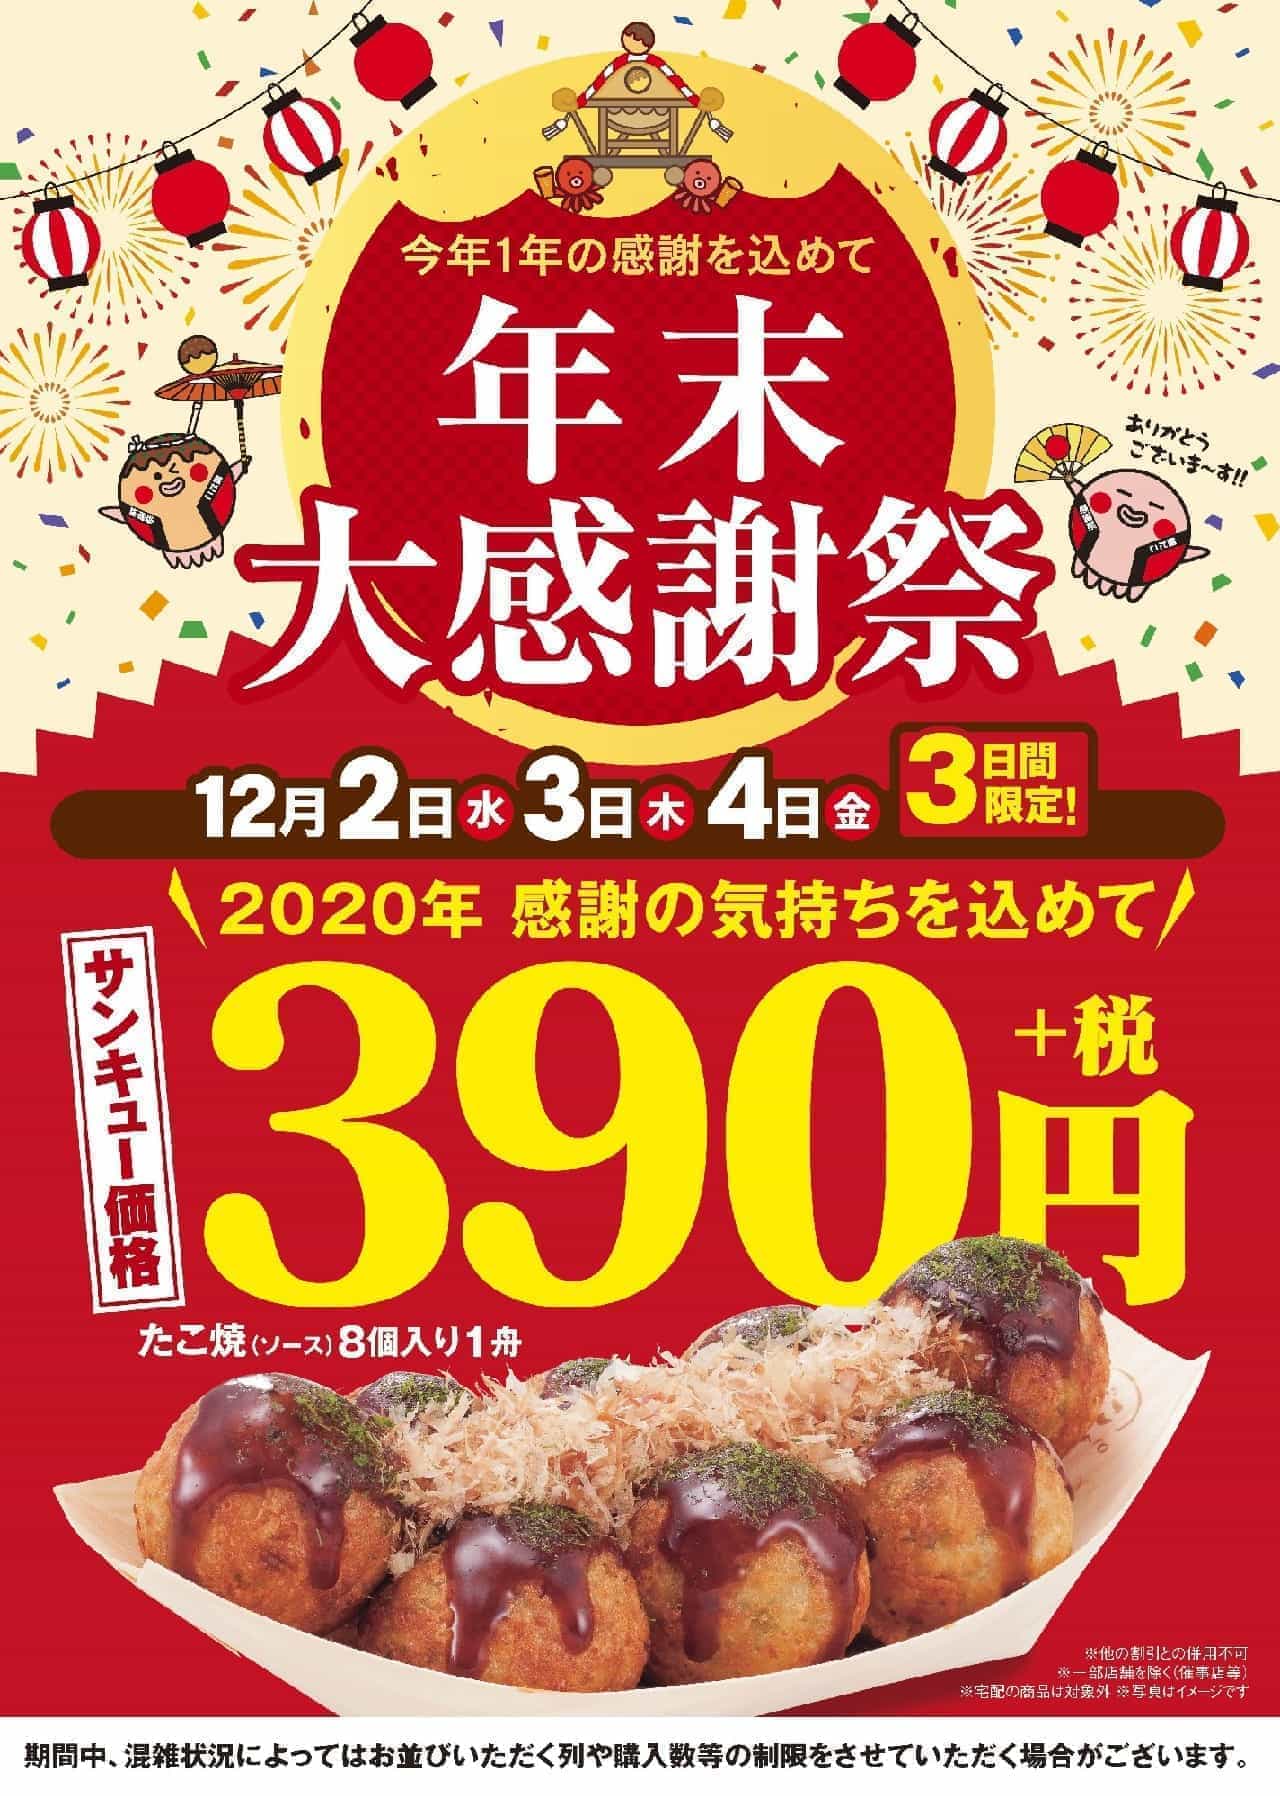 Tsukiji Gindaco "Takoyaki" 8 pieces 390 yen